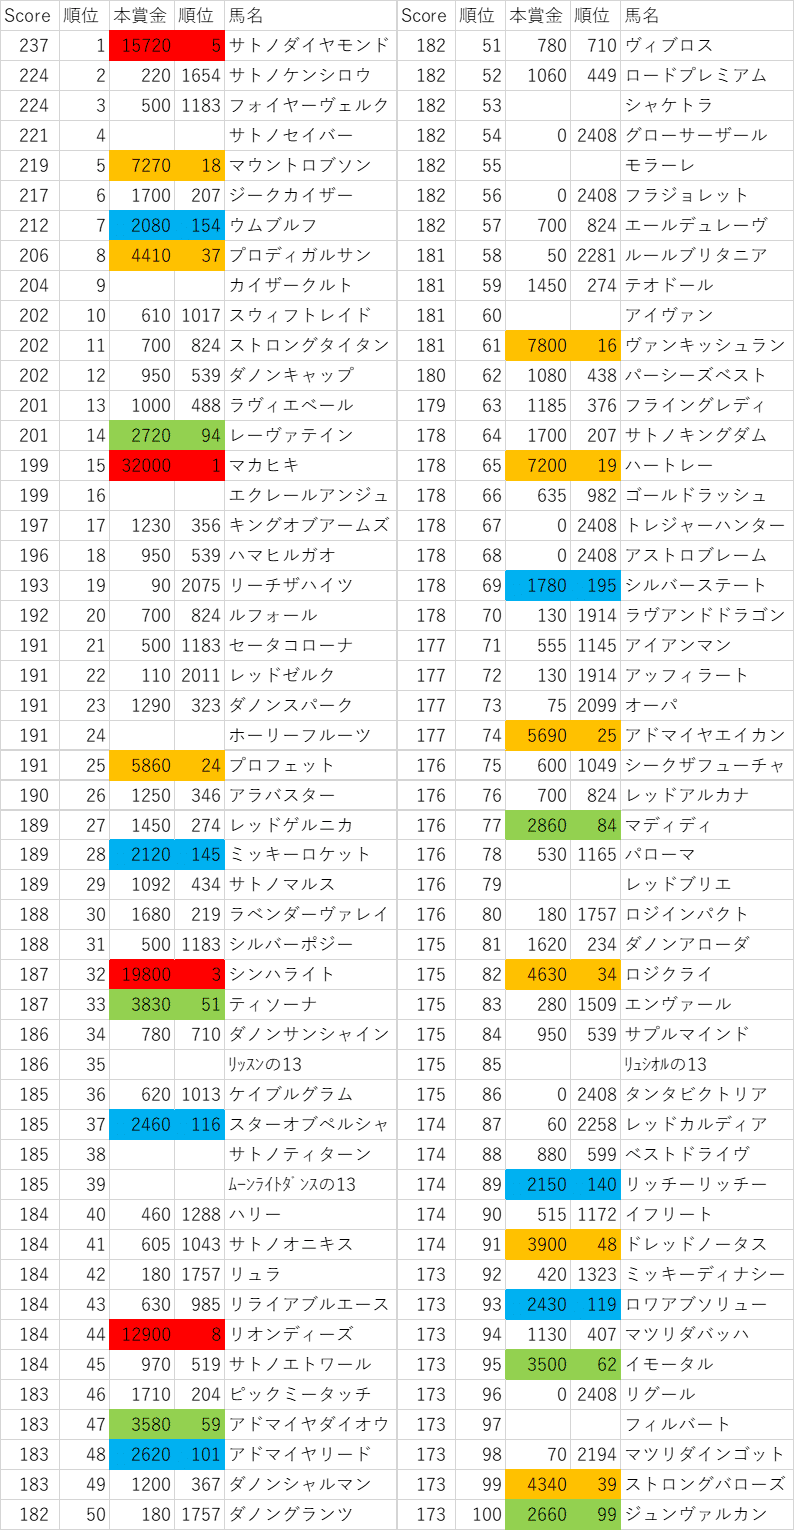 2013年産駒スコア1~100位